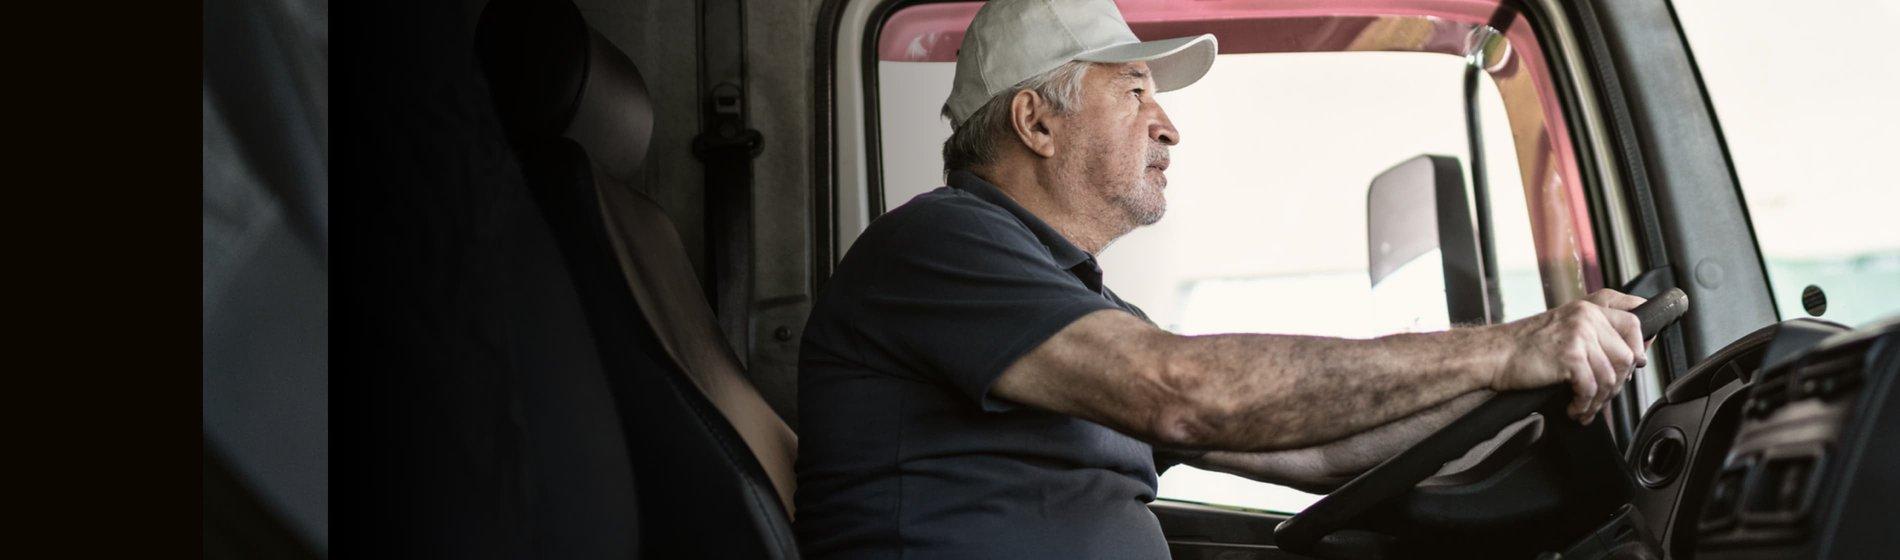 Erweitertes Flottenmanagement für Lastkraftwagenfahrer